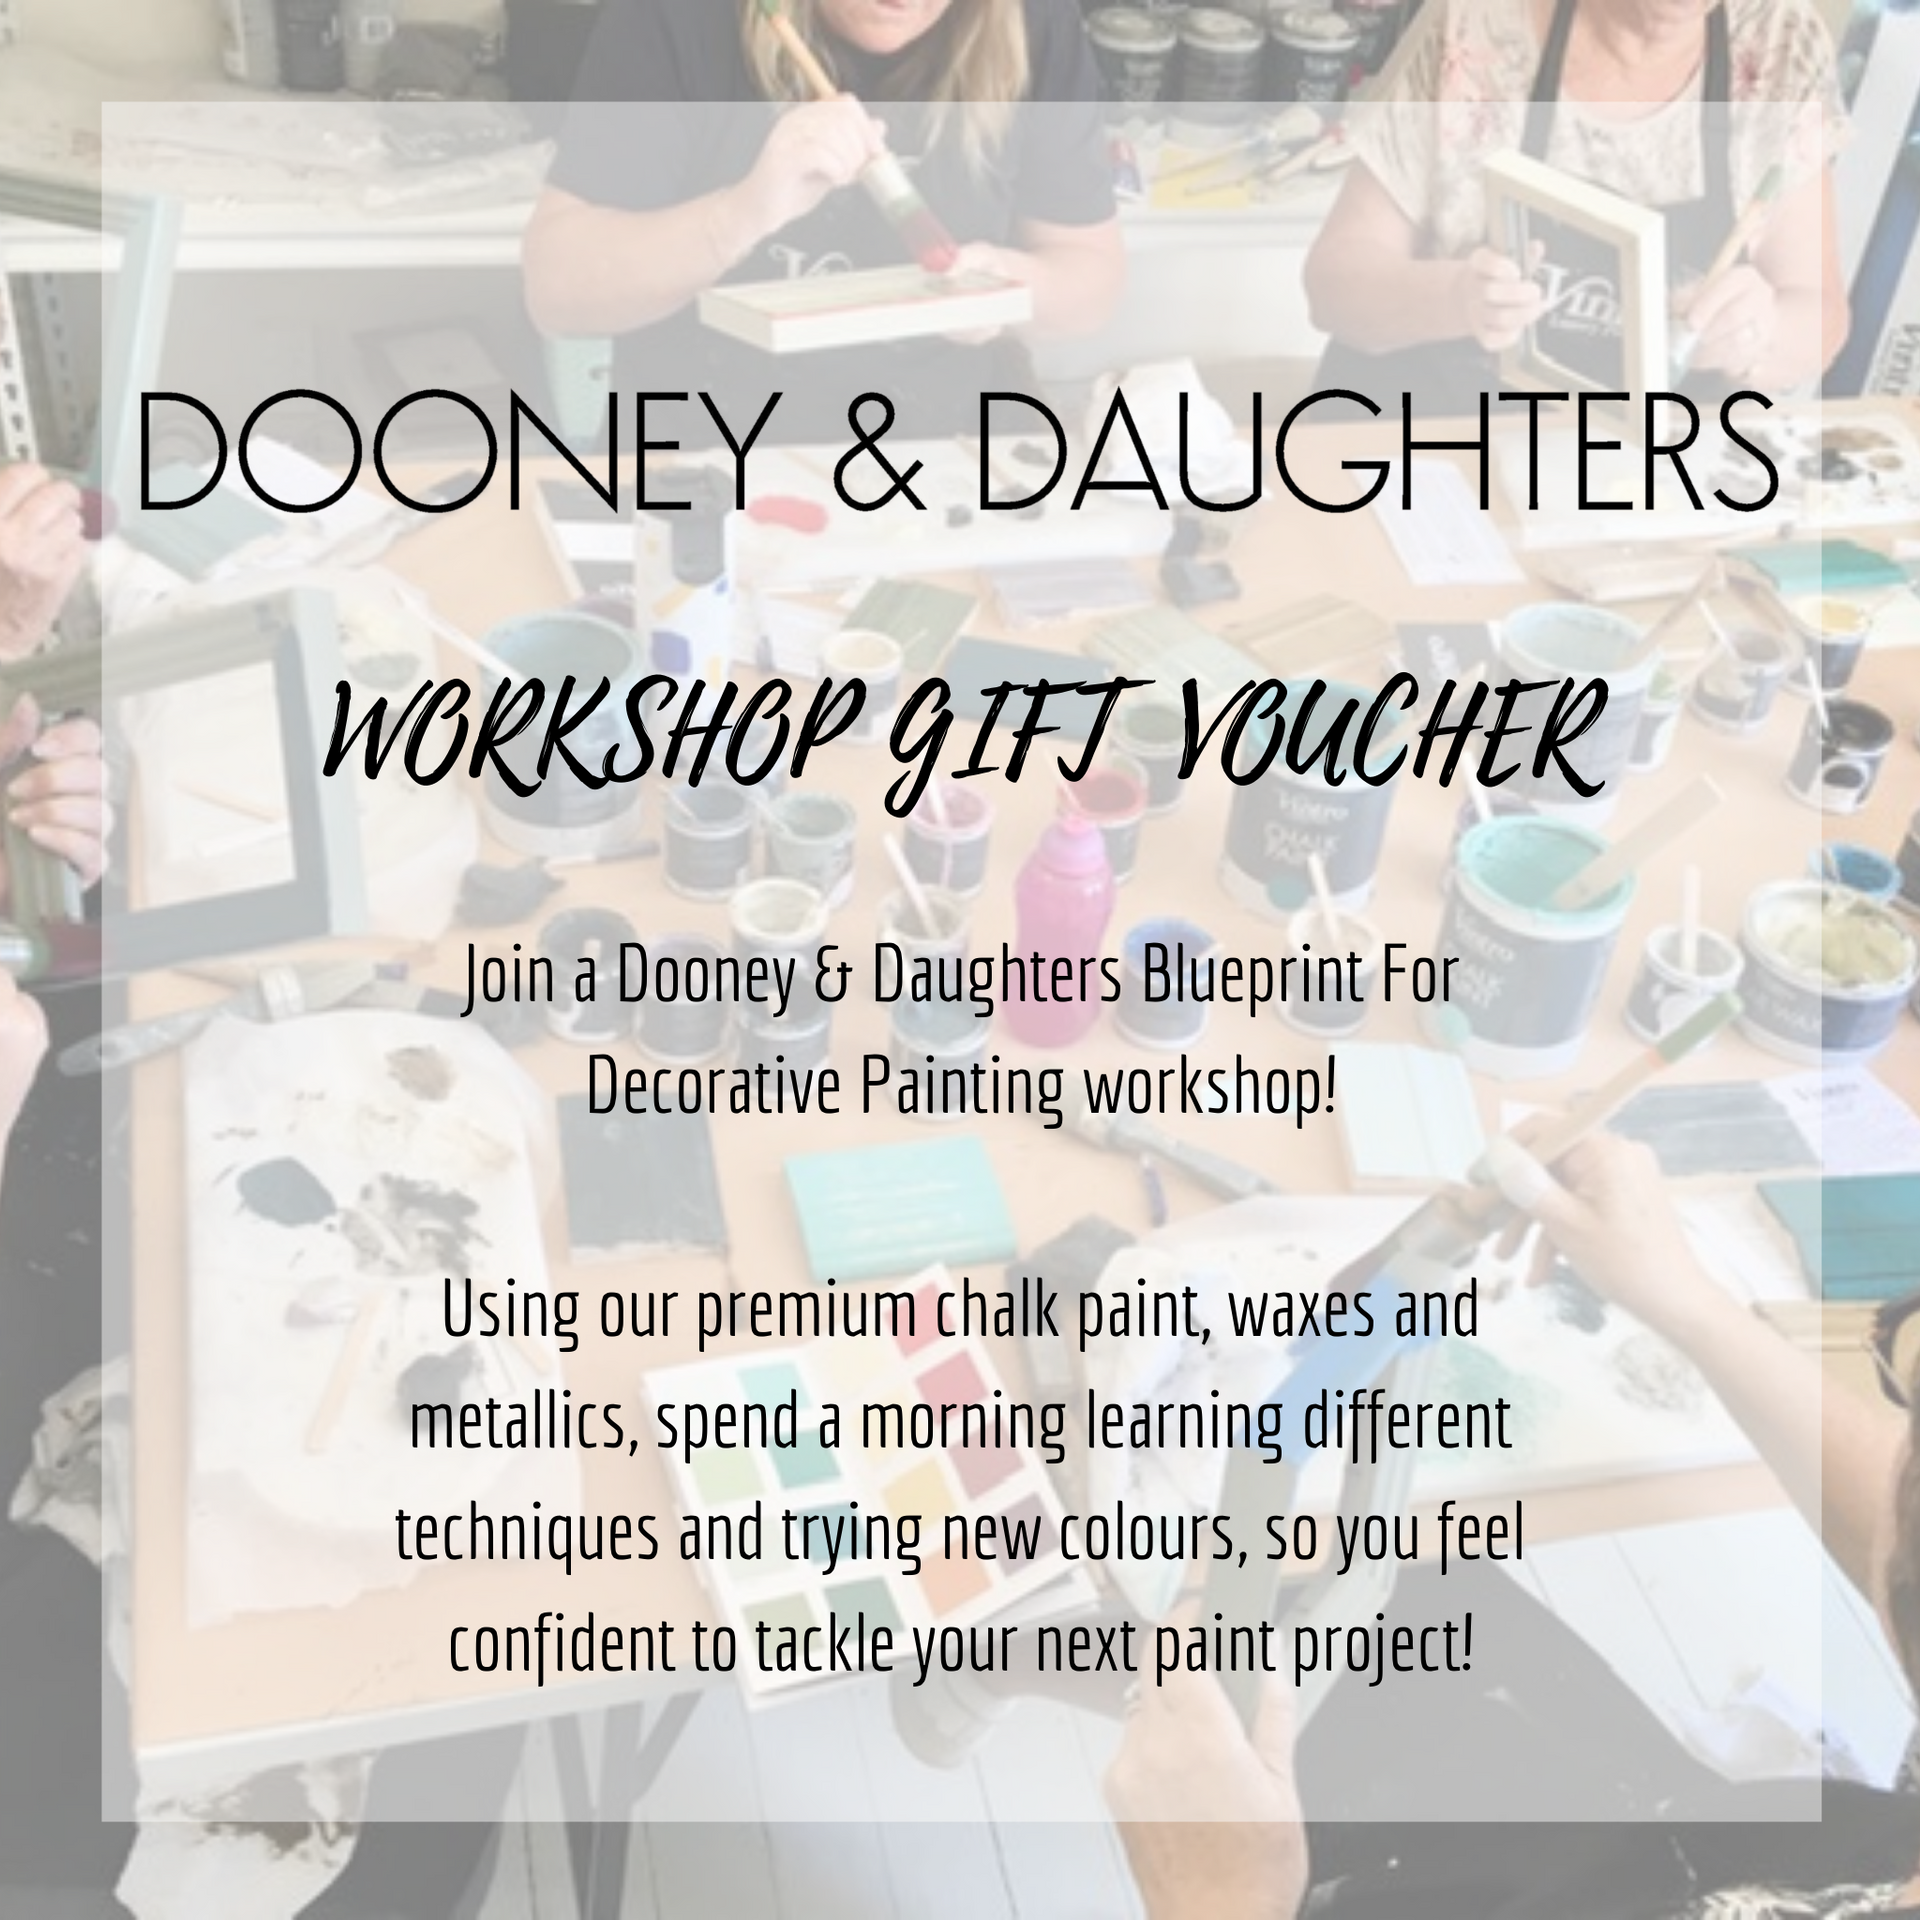 Dooney & Daughters Blueprint Workshop Gift Voucher